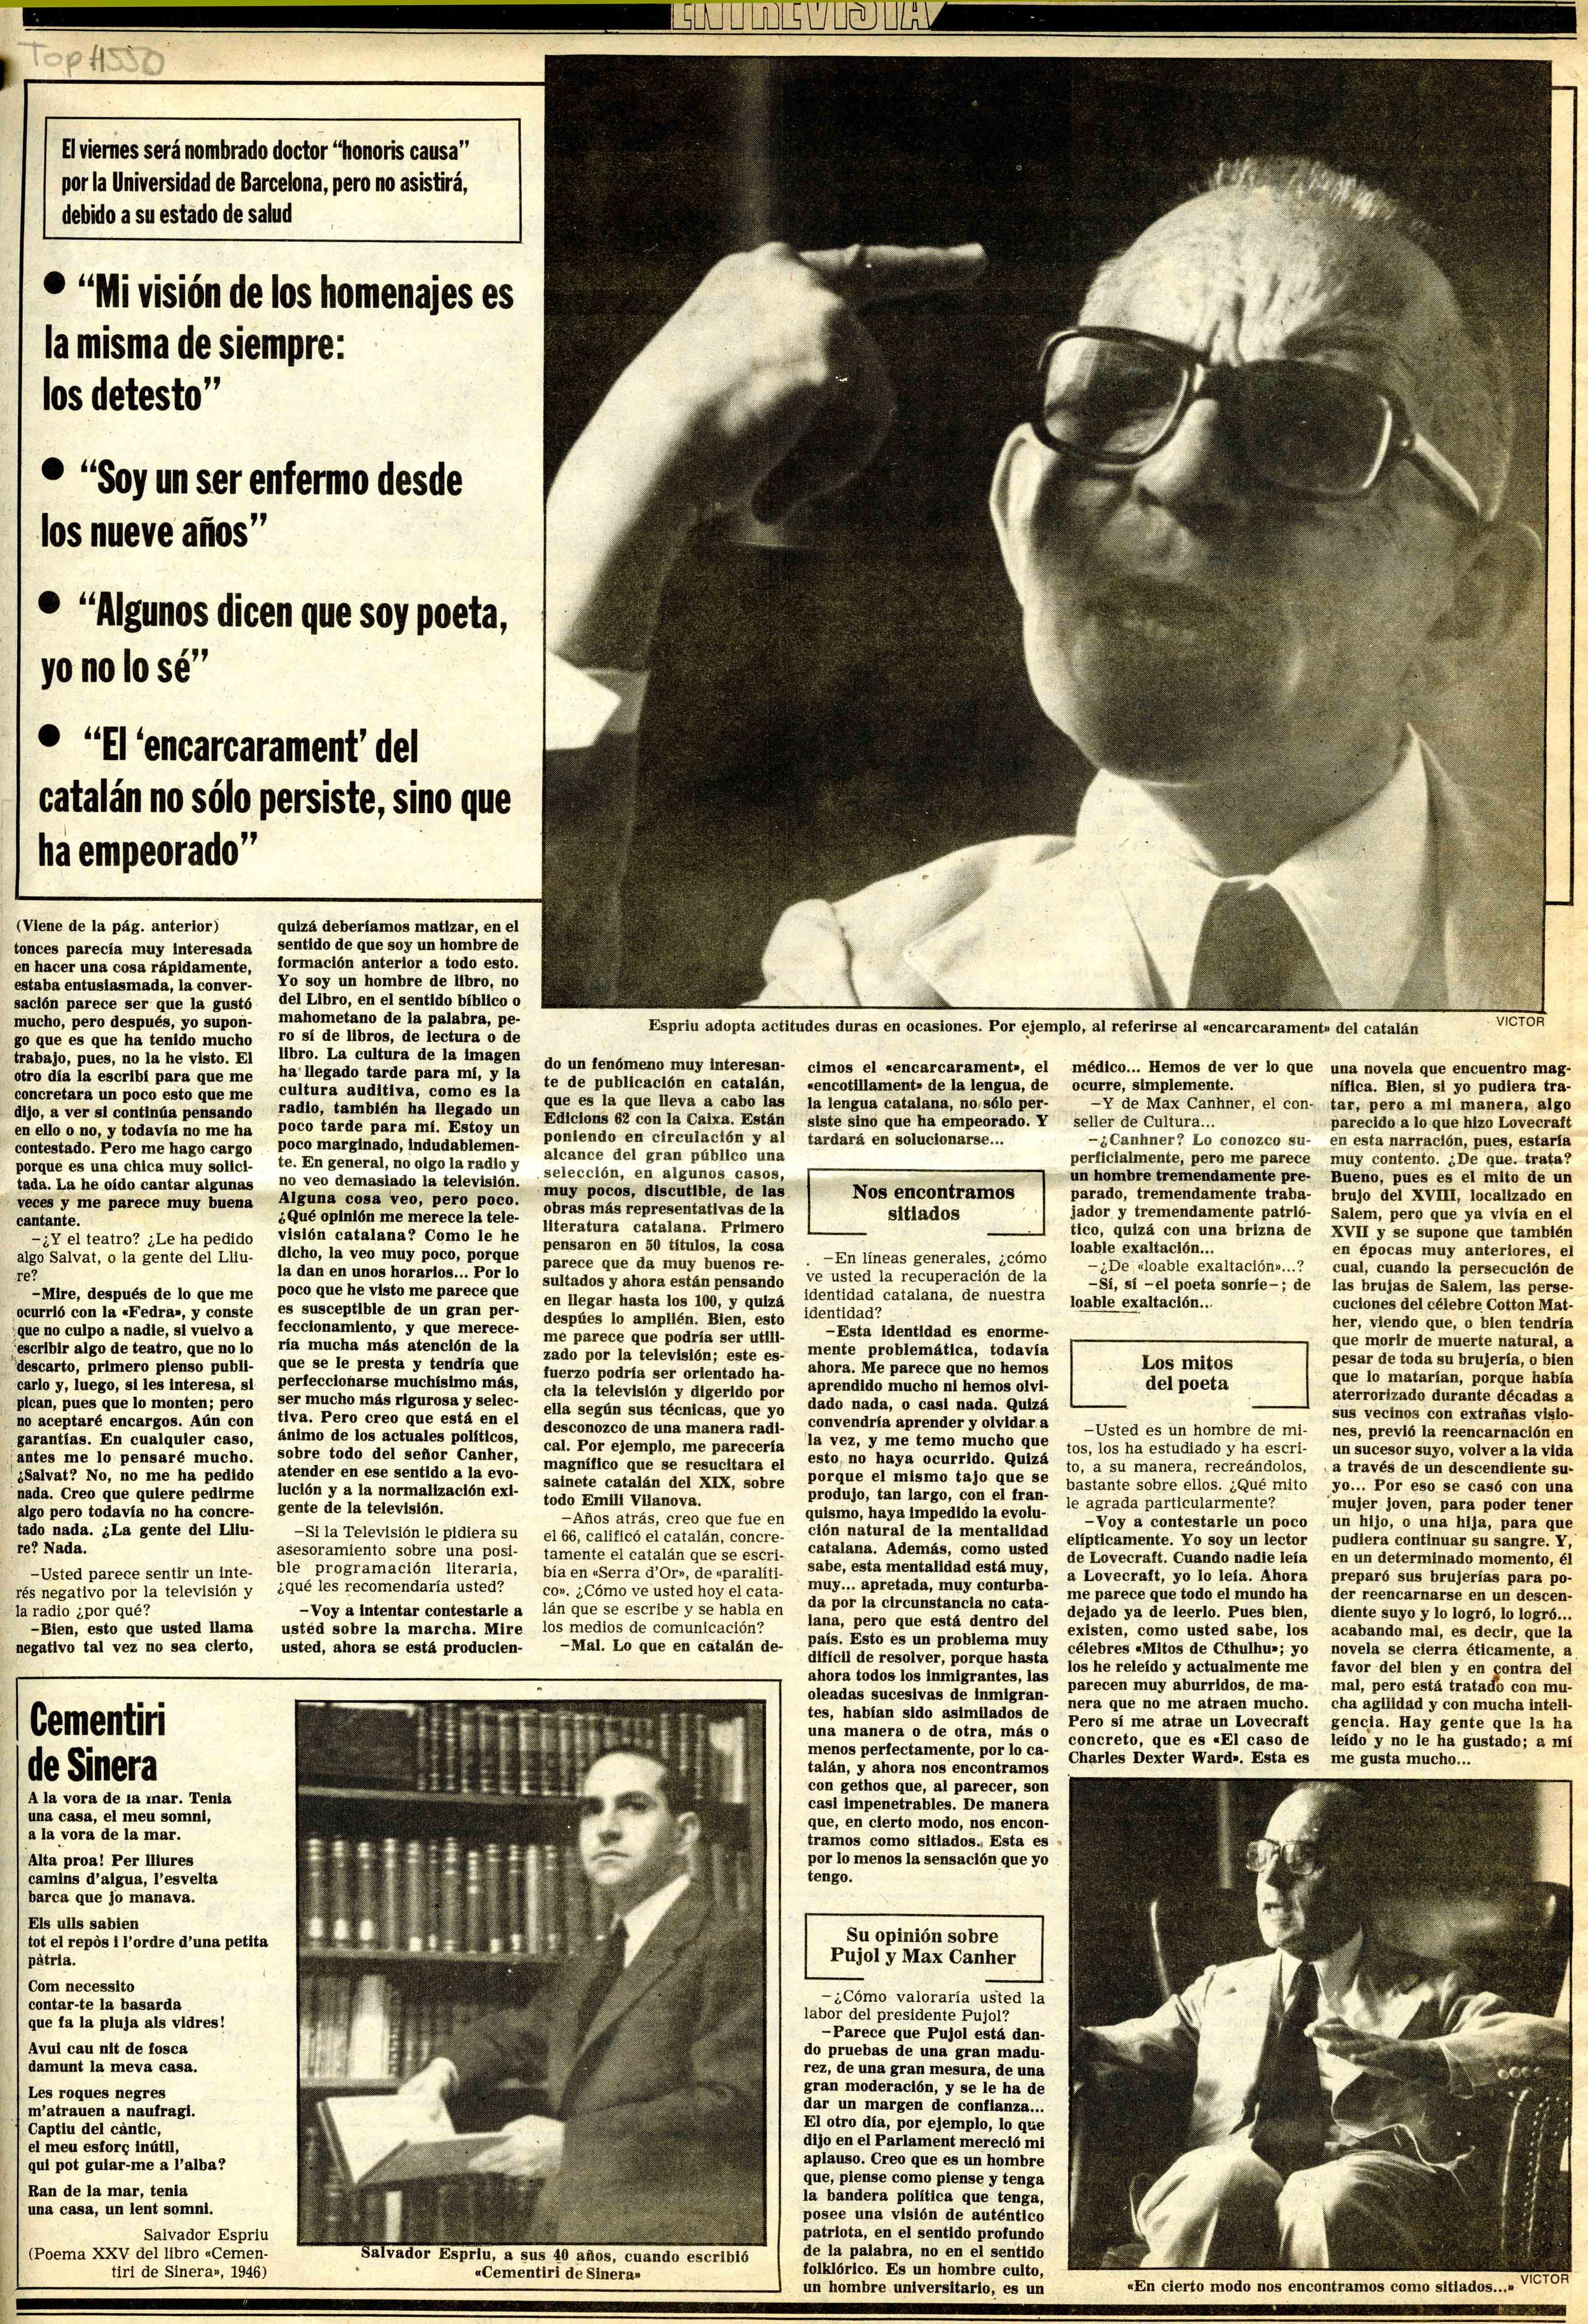 Segarra, Joan de. Salvador Espriu, marginado y escéptico. El Noticiero Universal, 0710/1980